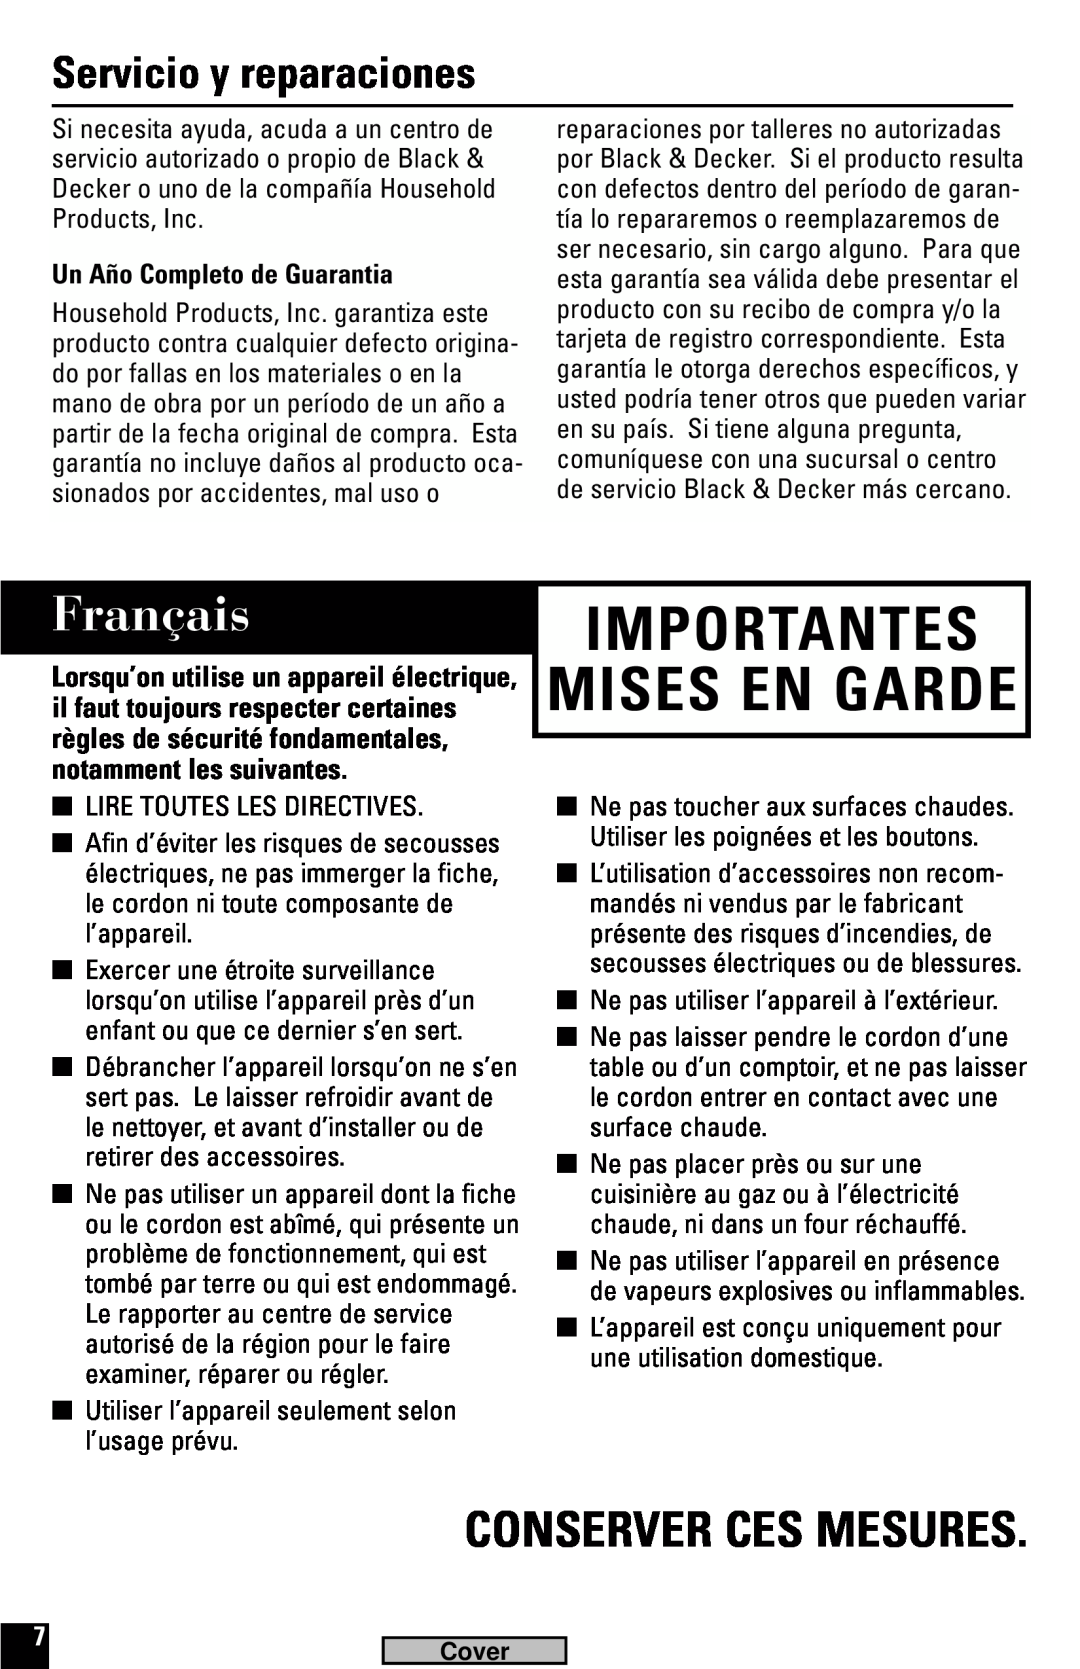 Black & Decker G100, G600 manual Français, Conserver Ces Mesures, Servicio y reparaciones, Un Año Completo de Guarantia 